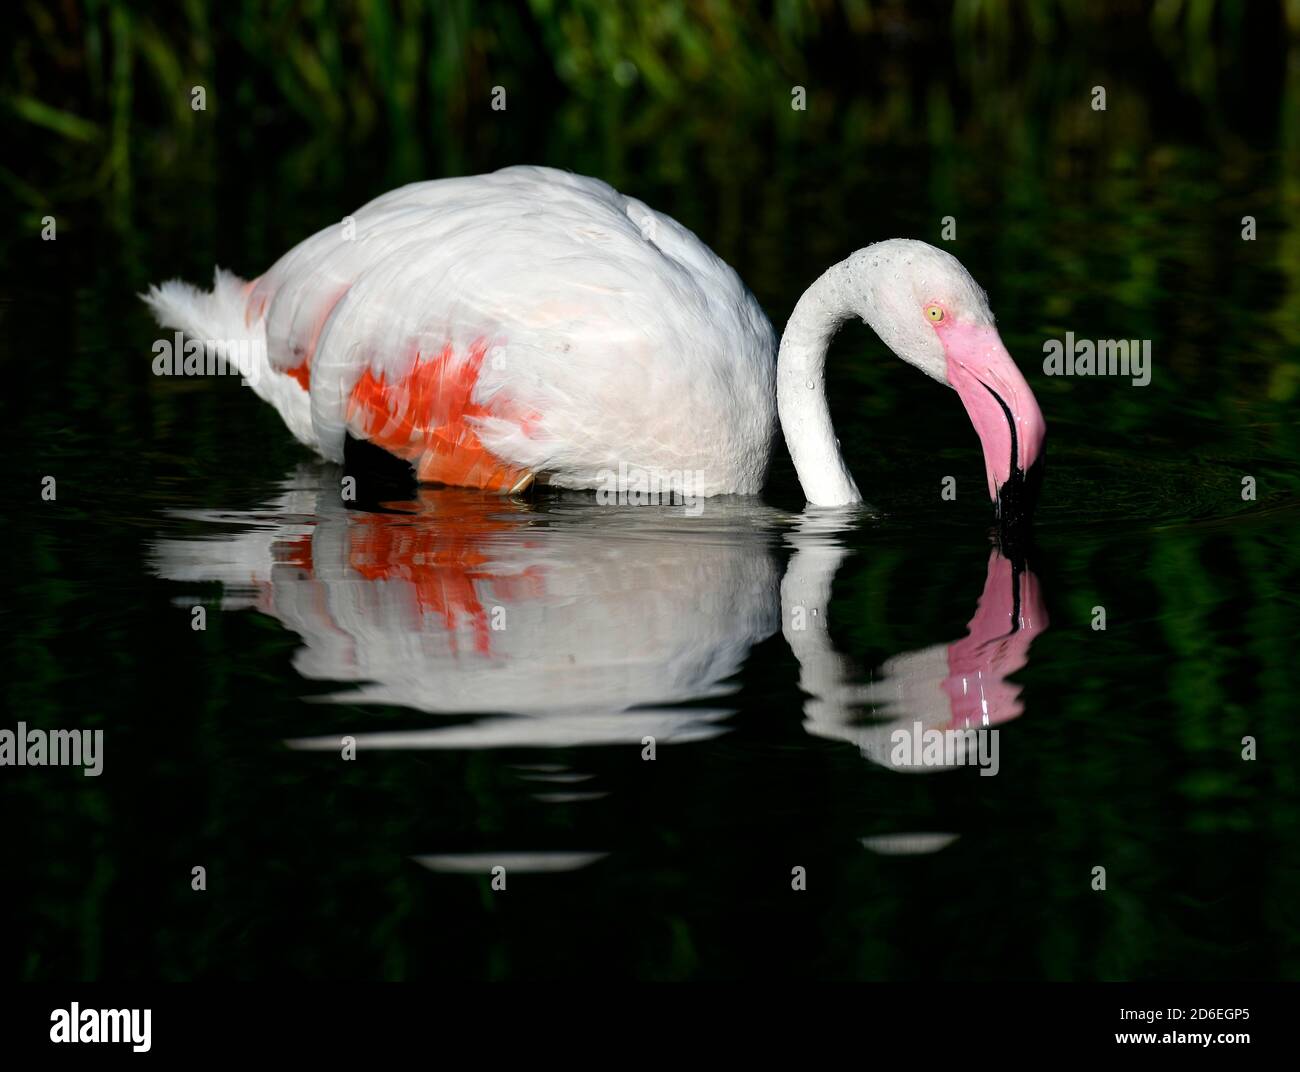 Großer Flamingo (Phoenicopterus ruber roseus) im Wasser, gefangen Stockfoto